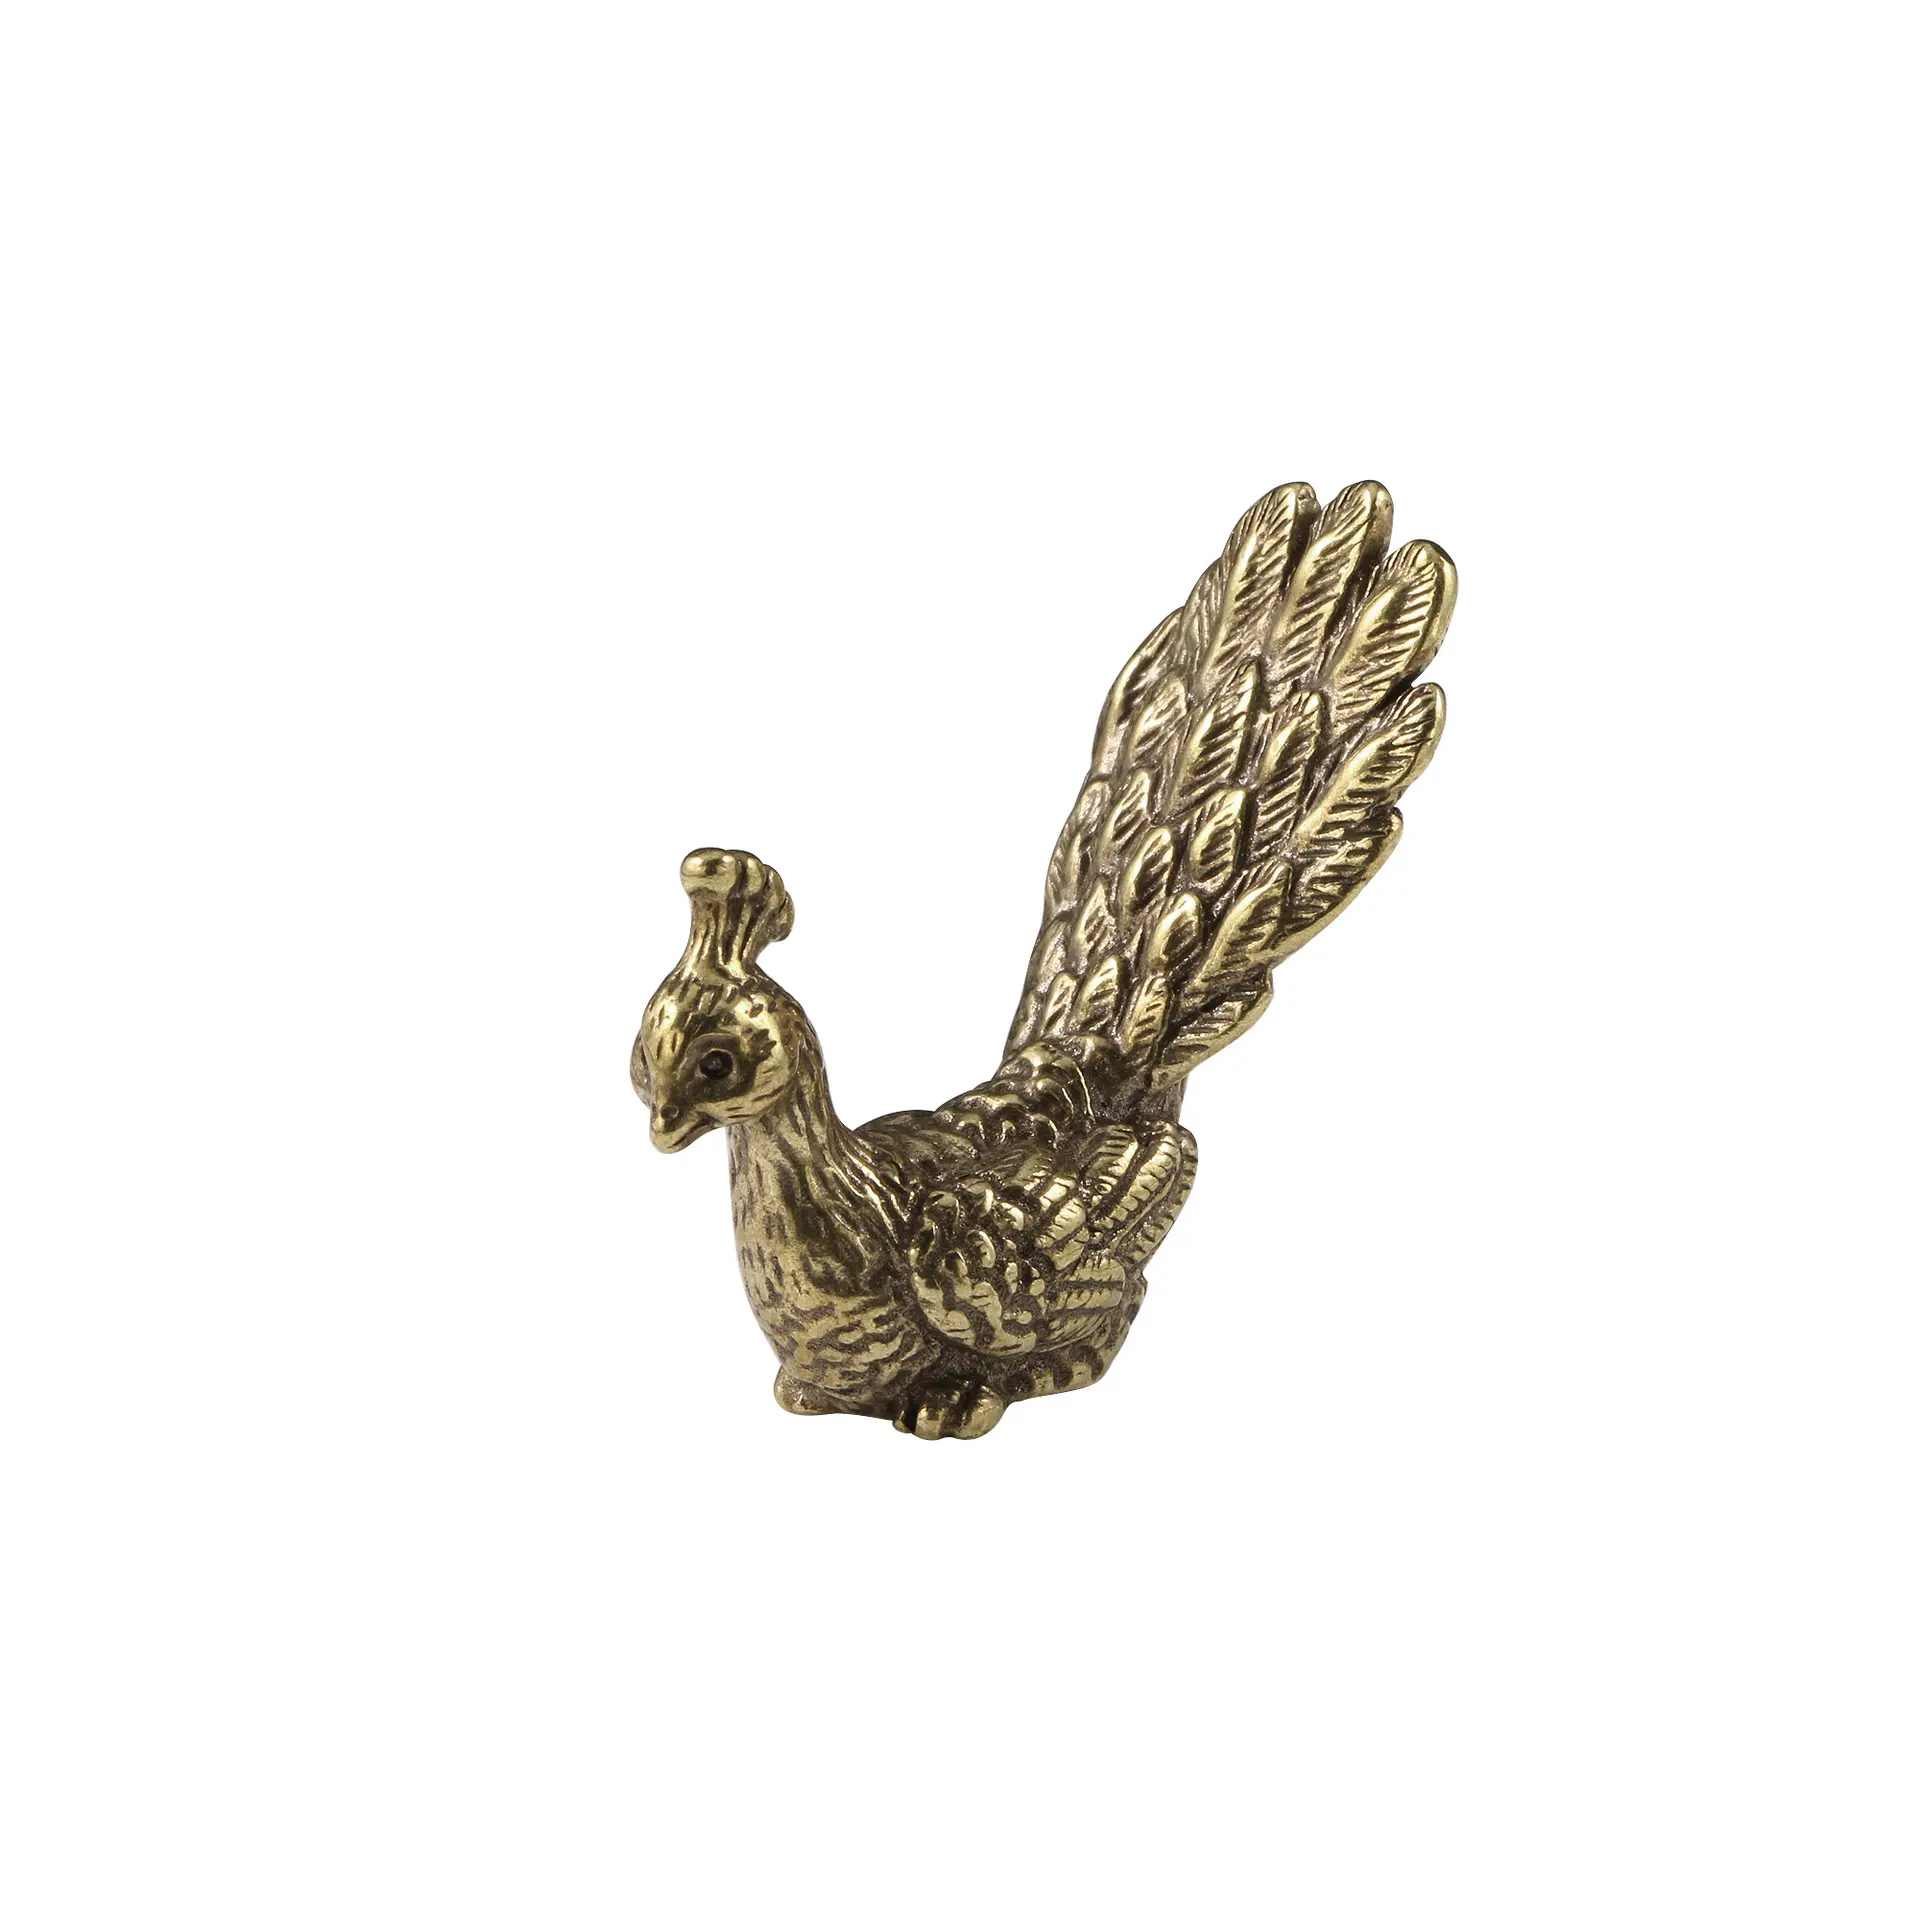 Haga latón viejo orgulloso como adornos de pavo real, artesanías talladas en bronce antiguo, muebles de cobre de escritorio de pavo real.